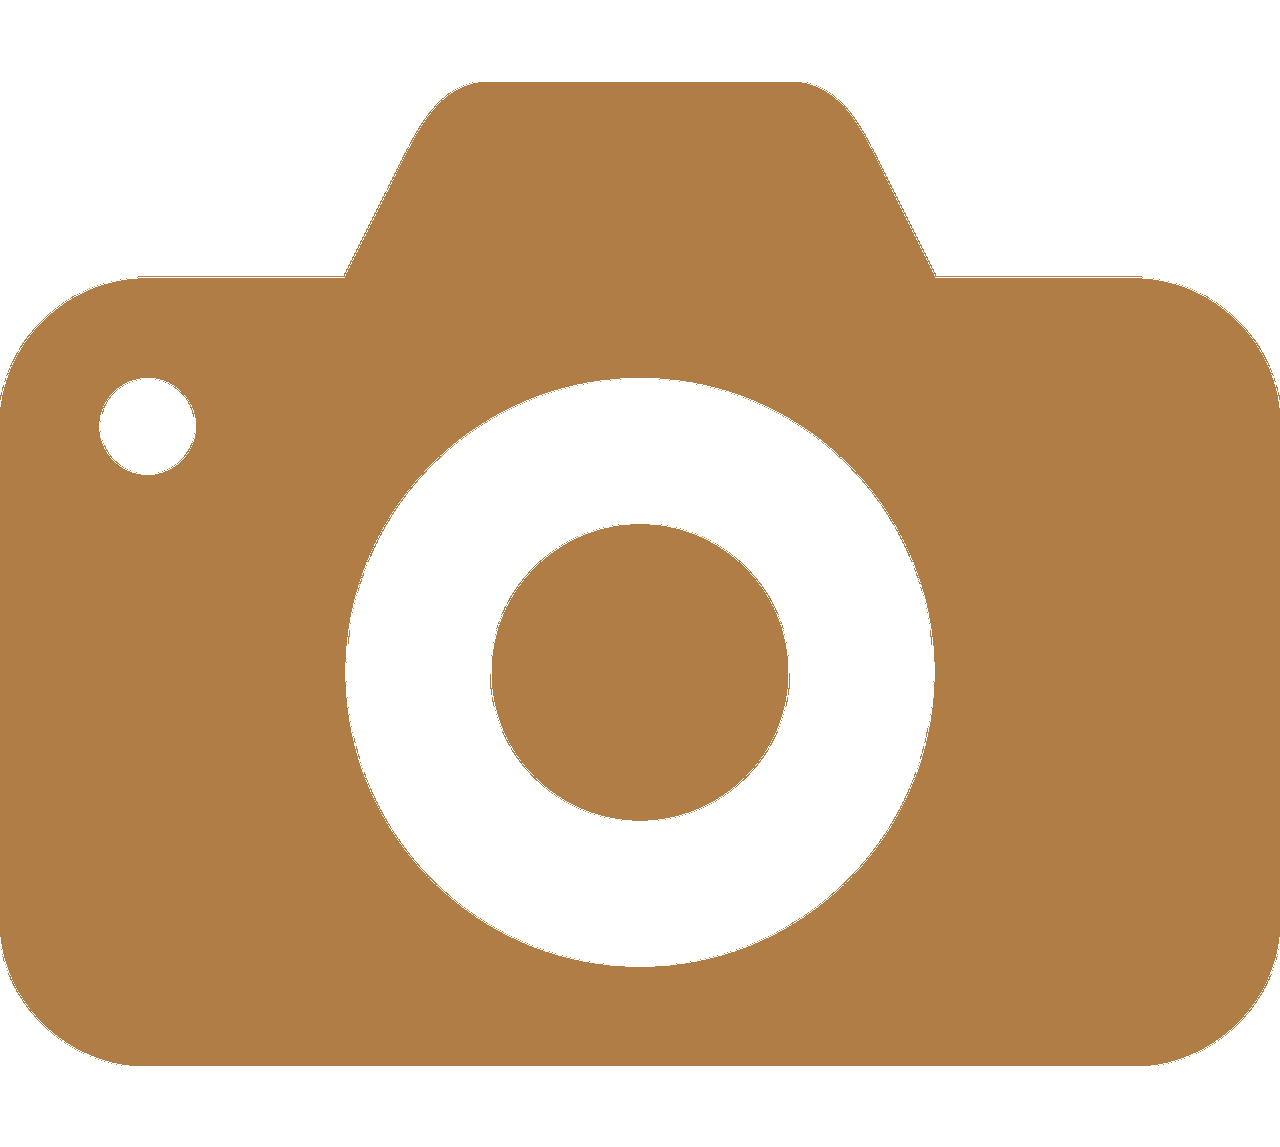  Bilder und Videos  Laden Sie beliebig Bilder, Screenshots und Videos hoch und teilen diese mit Ihrer Zielgruppe.